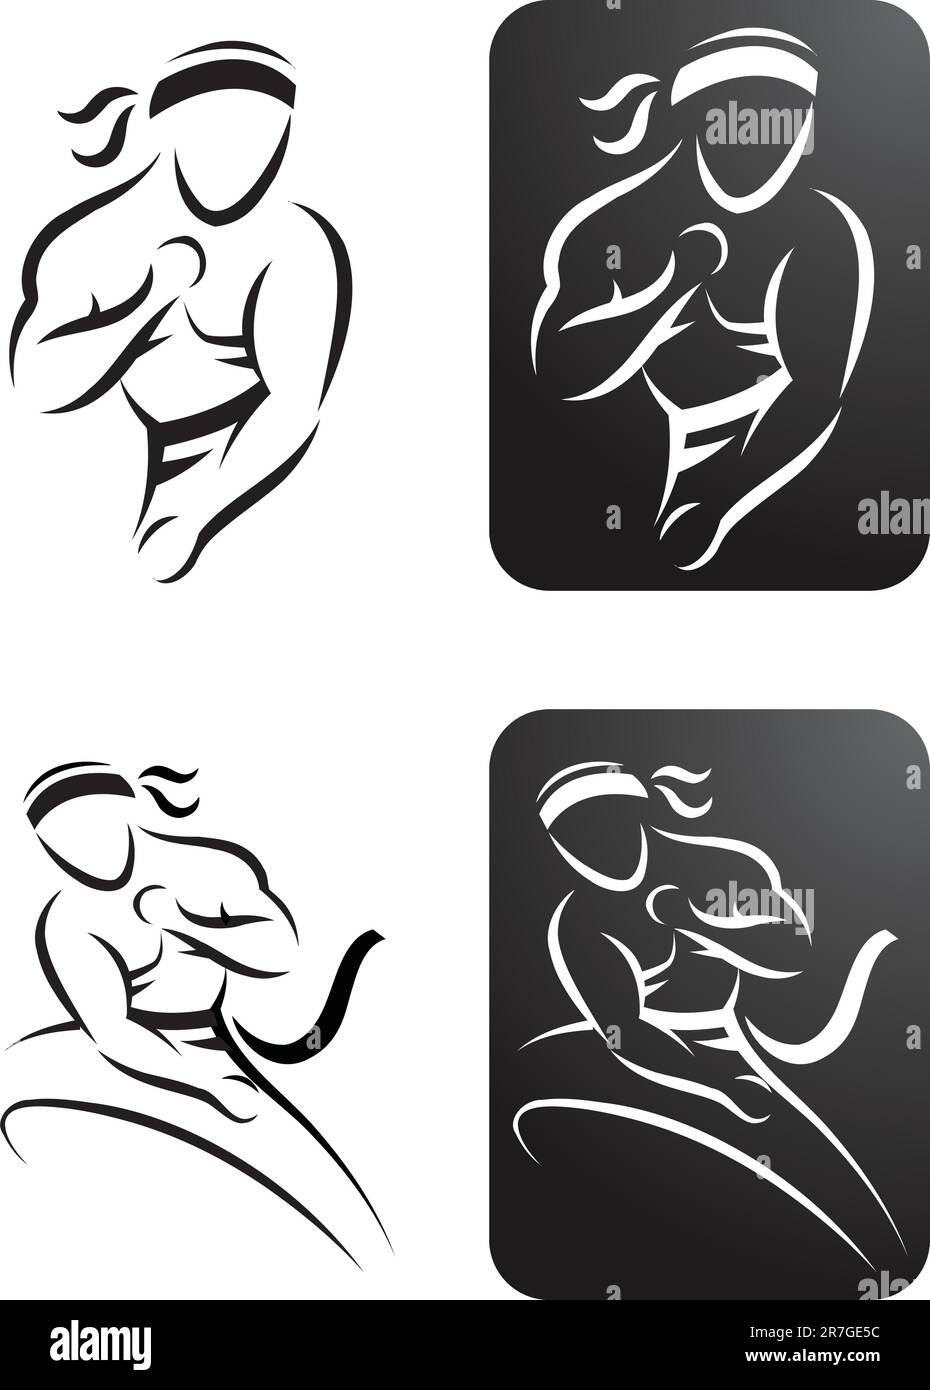 Quattro illustrazioni stilizzate di un uomo che esegue karate Illustrazione Vettoriale